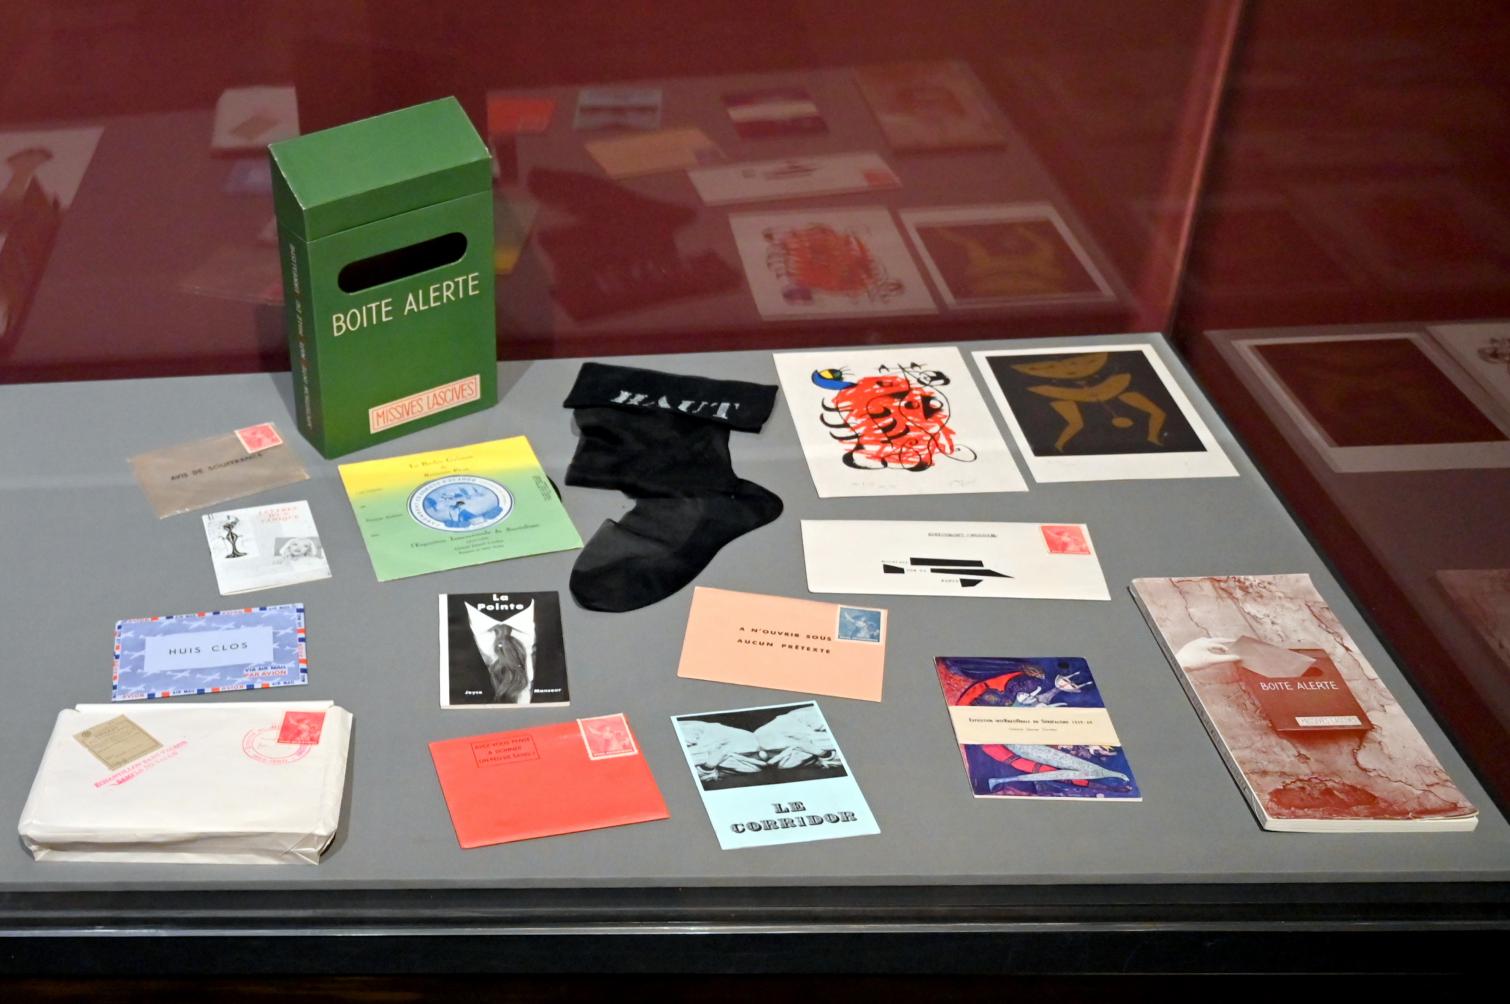 Mimi Parent (1959), Auswahl von Boîte alerte (Box in Alarmbereitschaft), London, Tate Modern, Ausstellung "Surrealism Beyond Borders" vom 24.02.-29.08.2022, Saal 6, 1959